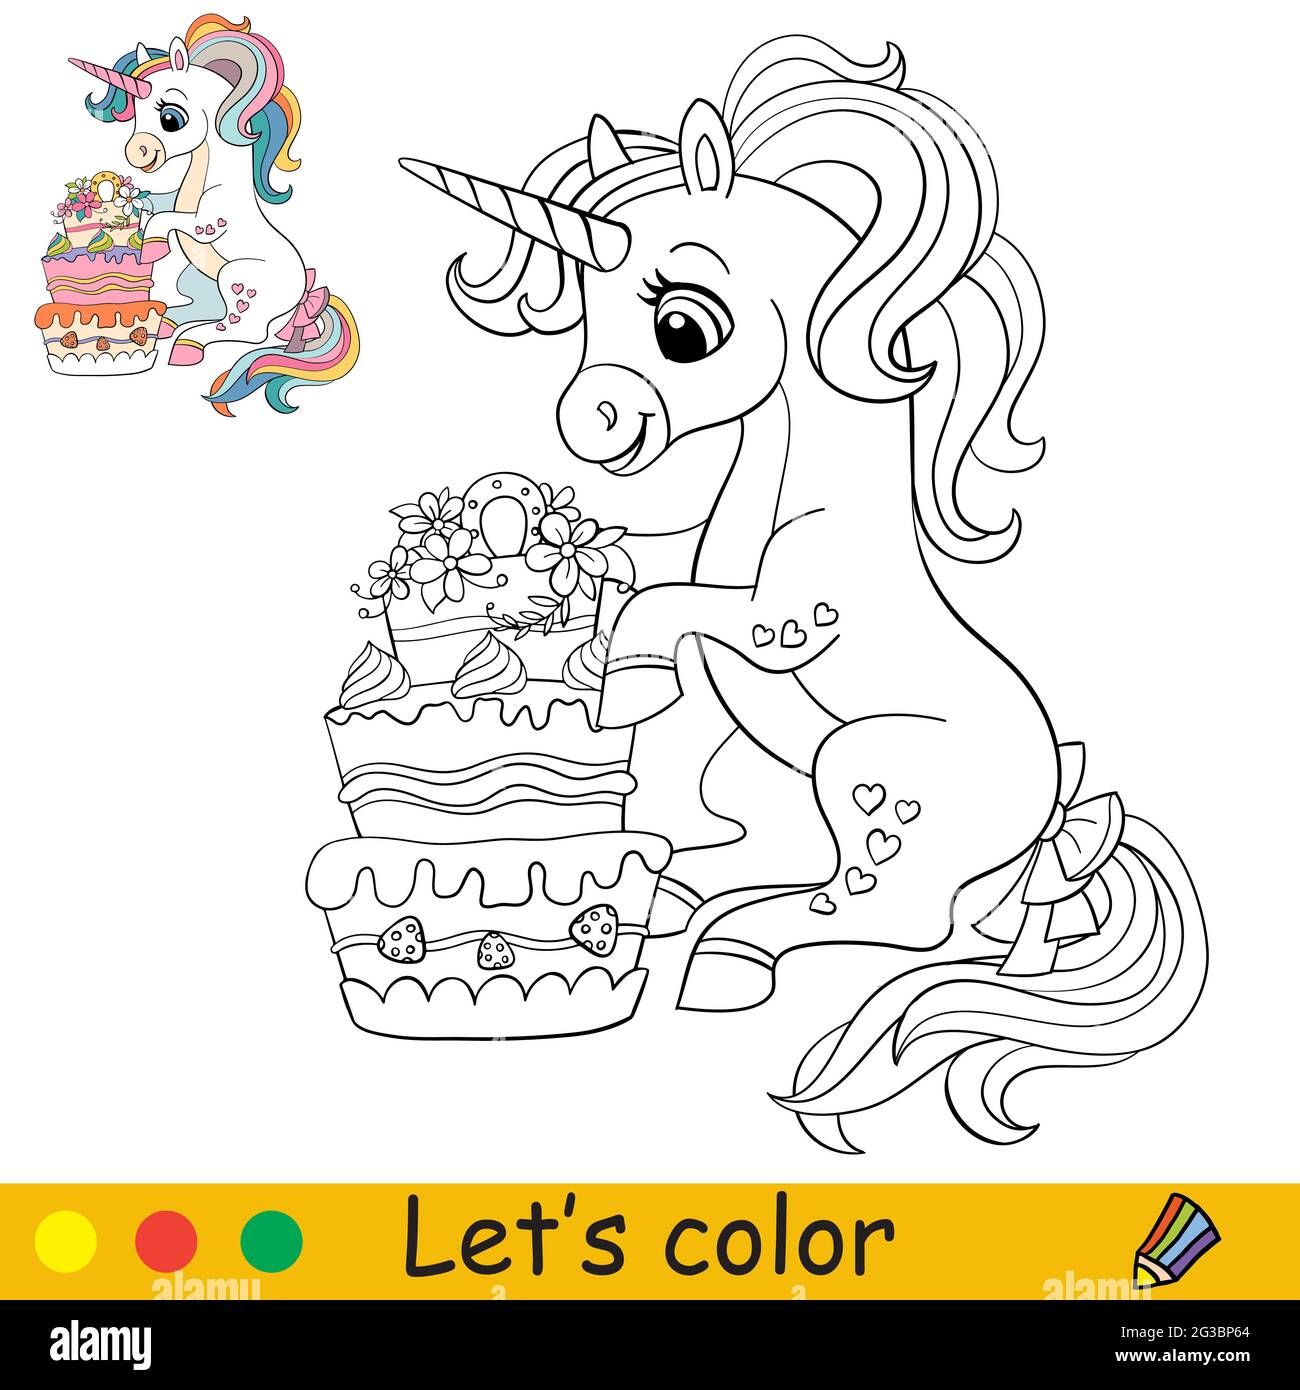 Páginas para colorear de pasteles imprimibles gratis para niños y